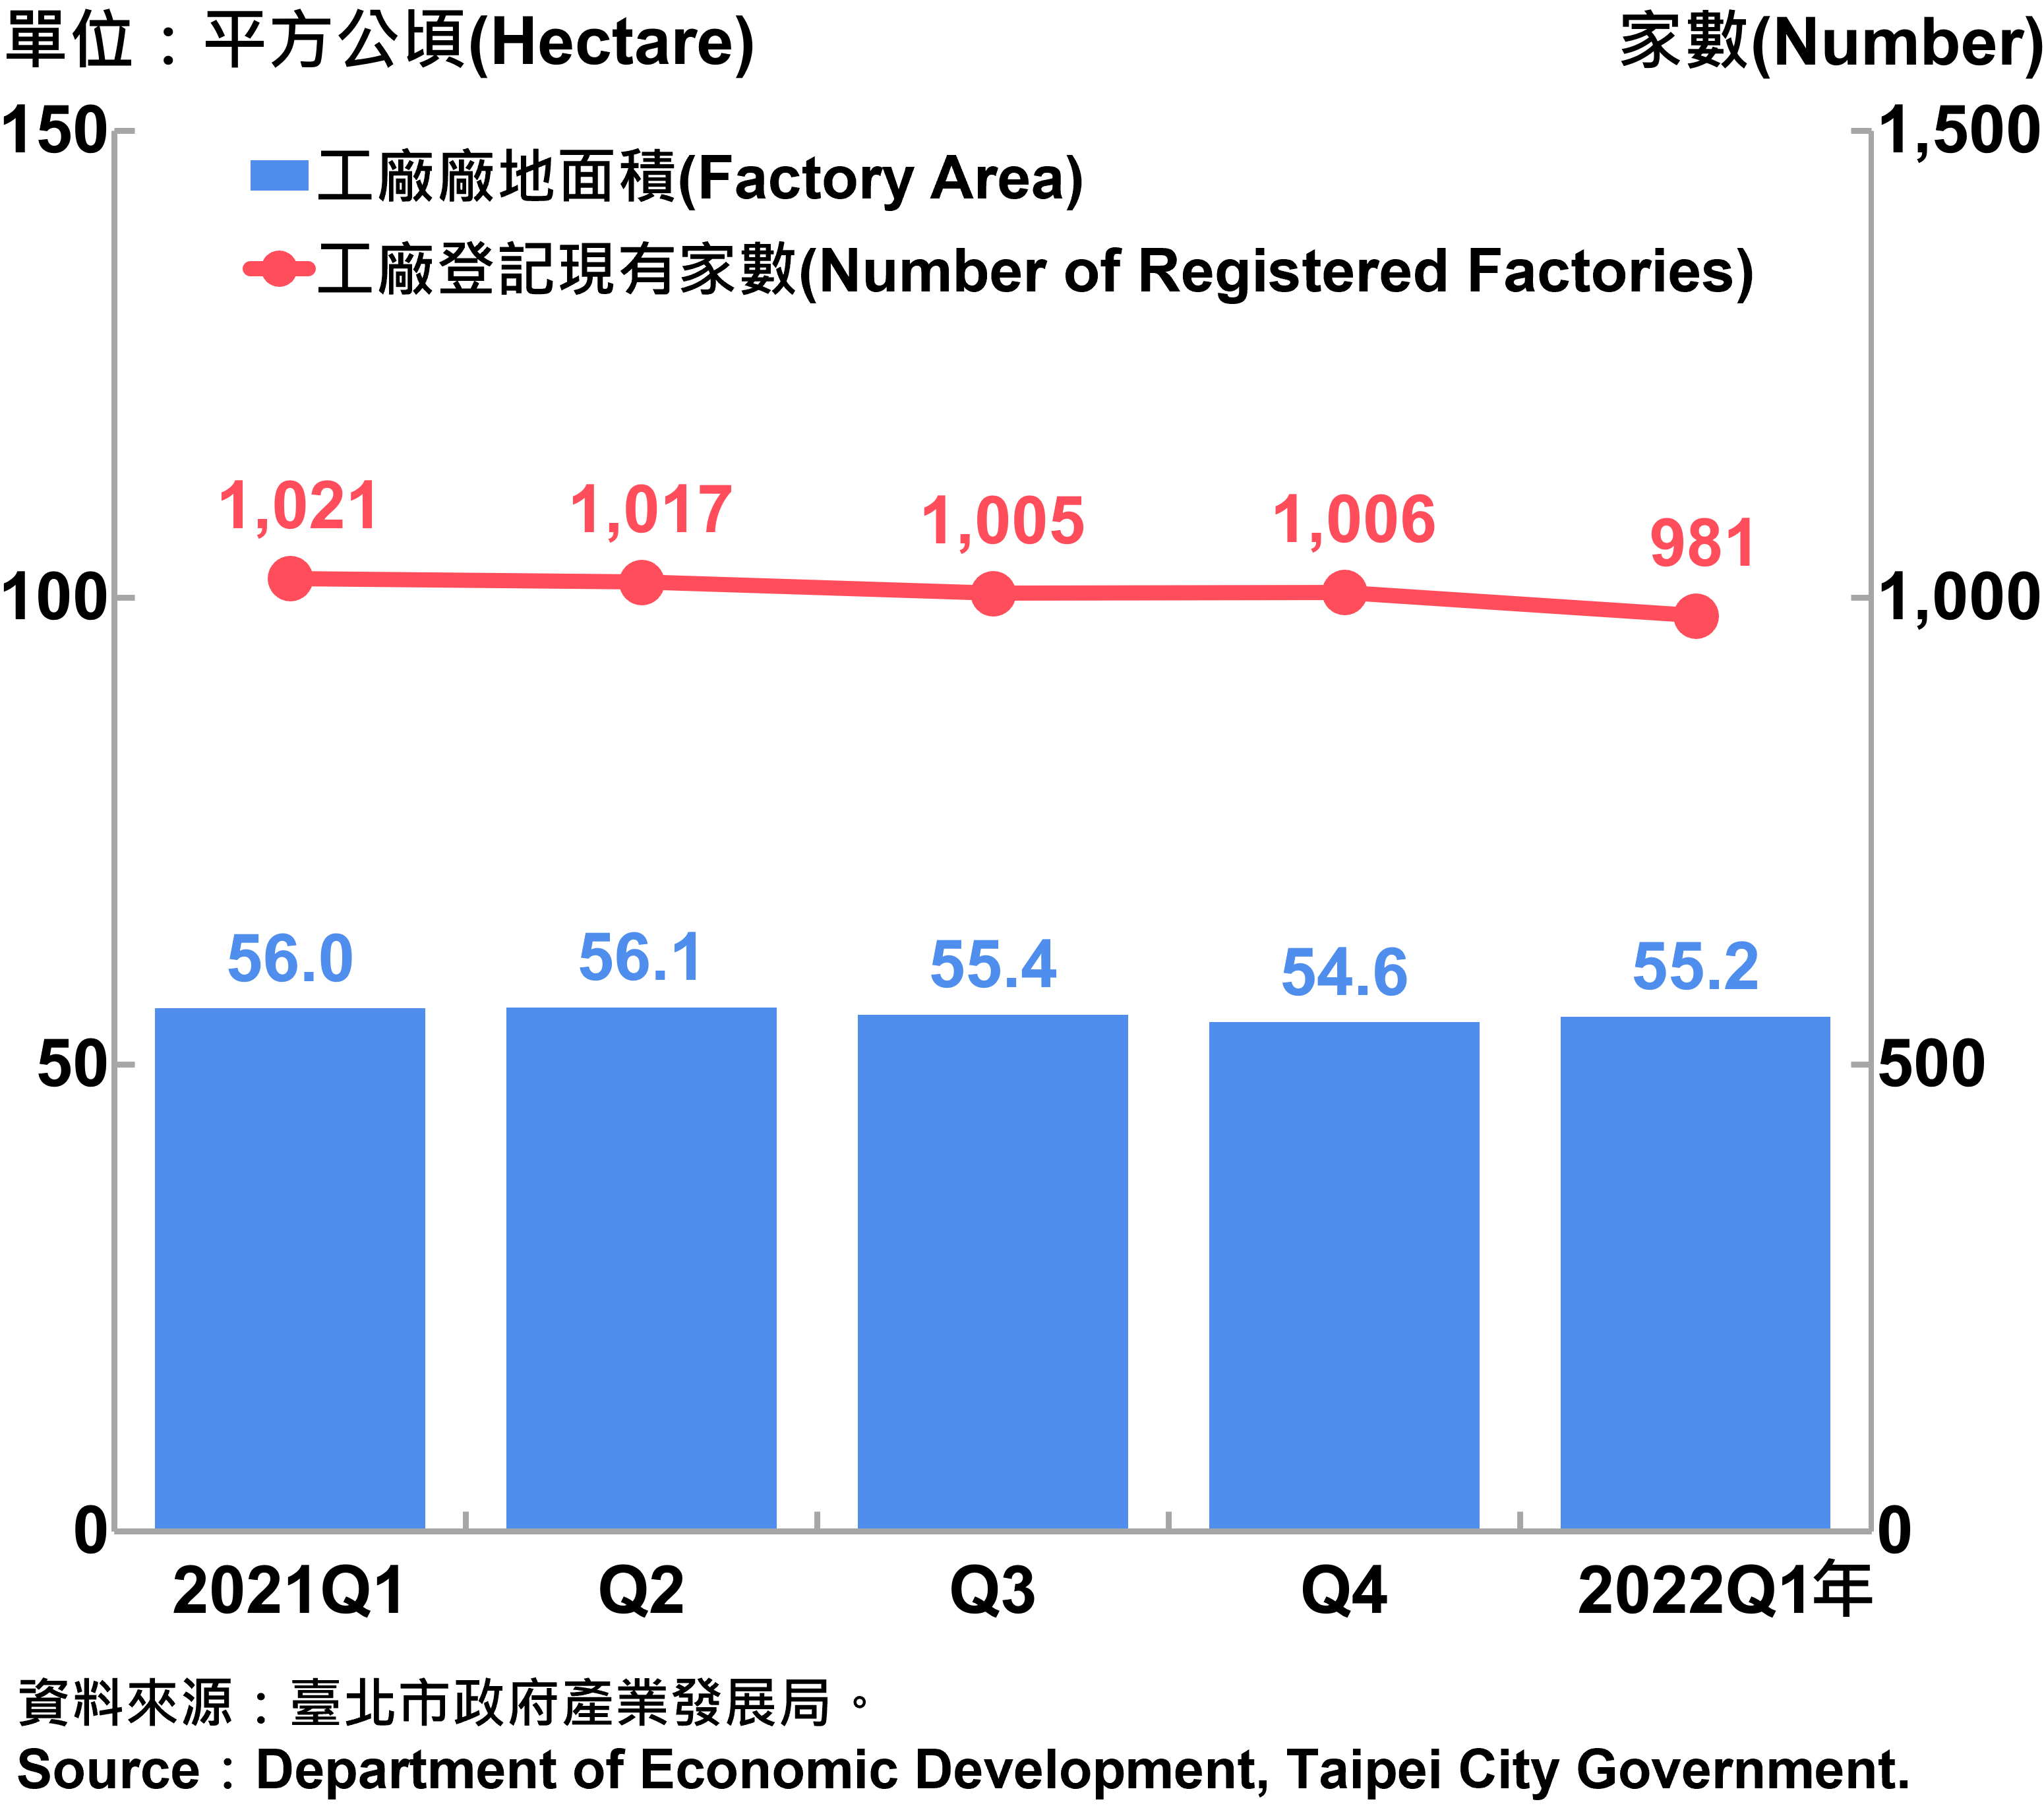 臺北市工廠登記家數及廠地面積—2022Q1 Factory Registration and Factory Area in Taipei City—2022Q1